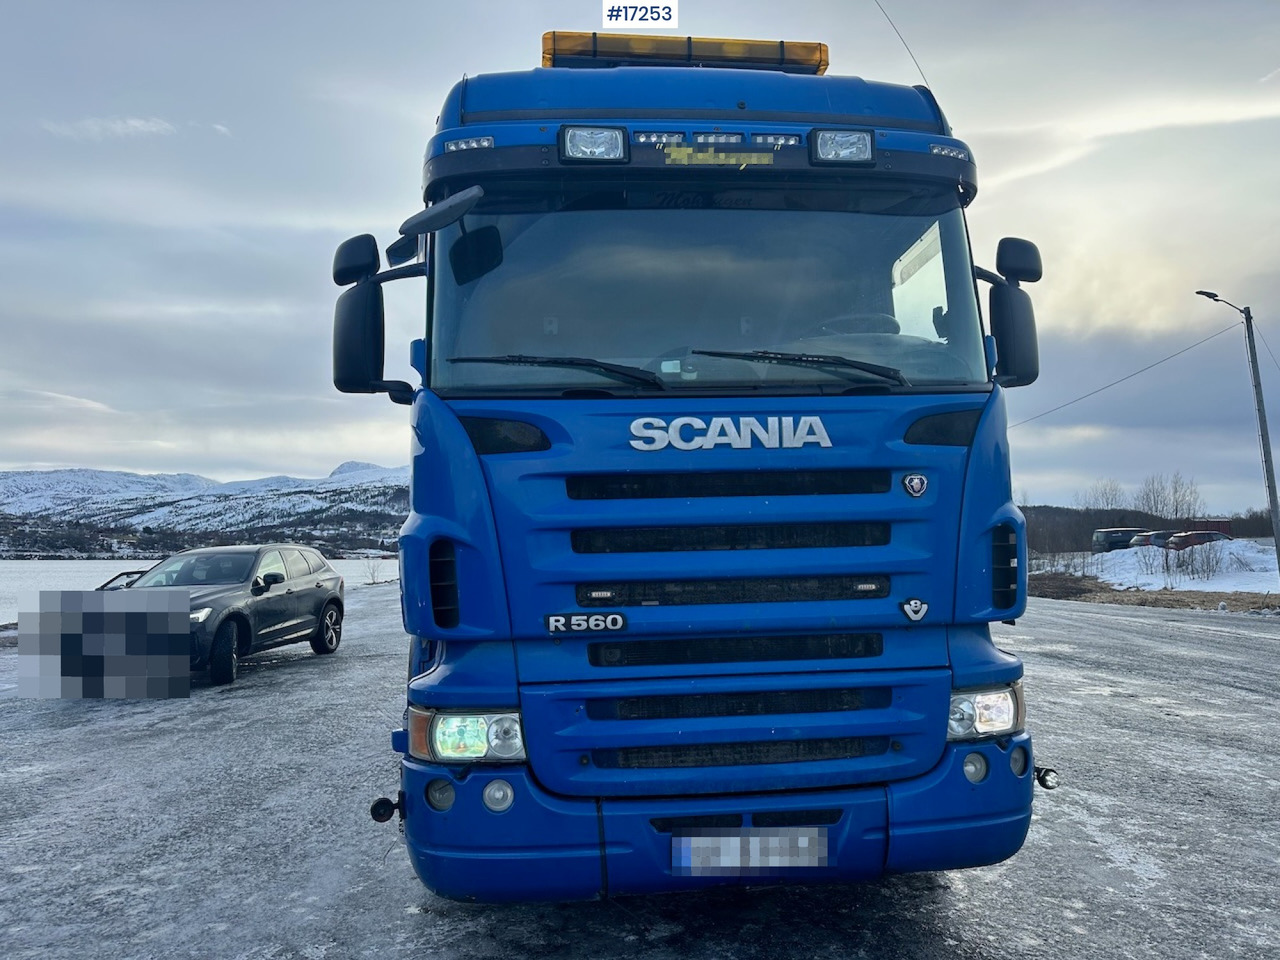 Istovarivač Scania R560: slika 9